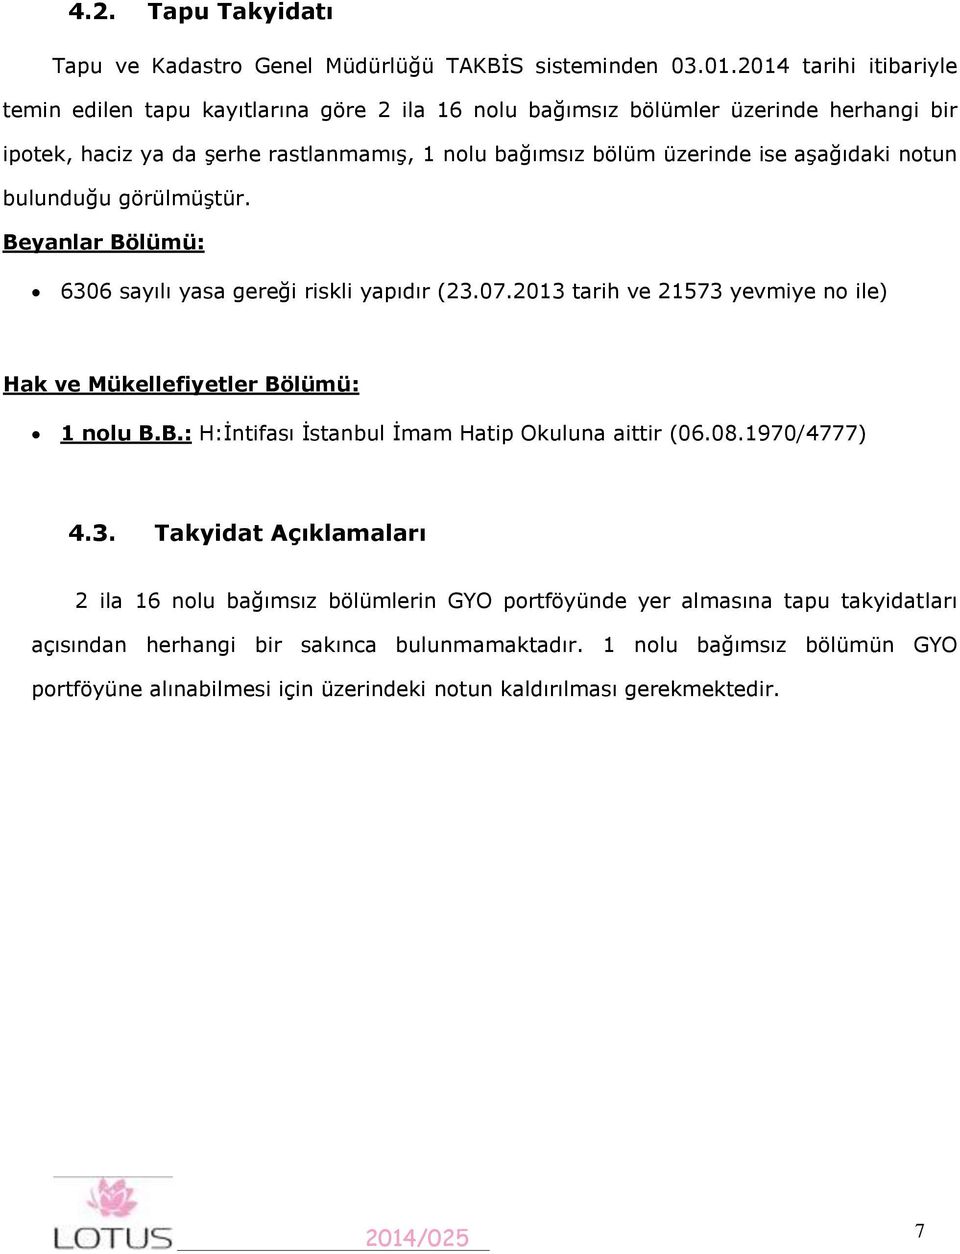 aşağıdaki notun bulunduğu görülmüştür. Beyanlar Bölümü: 6306 sayılı yasa gereği riskli yapıdır (23.07.2013 tarih ve 21573 yevmiye no ile) Hak ve Mükellefiyetler Bölümü: 1 nolu B.B.: H:İntifası İstanbul İmam Hatip Okuluna aittir (06.